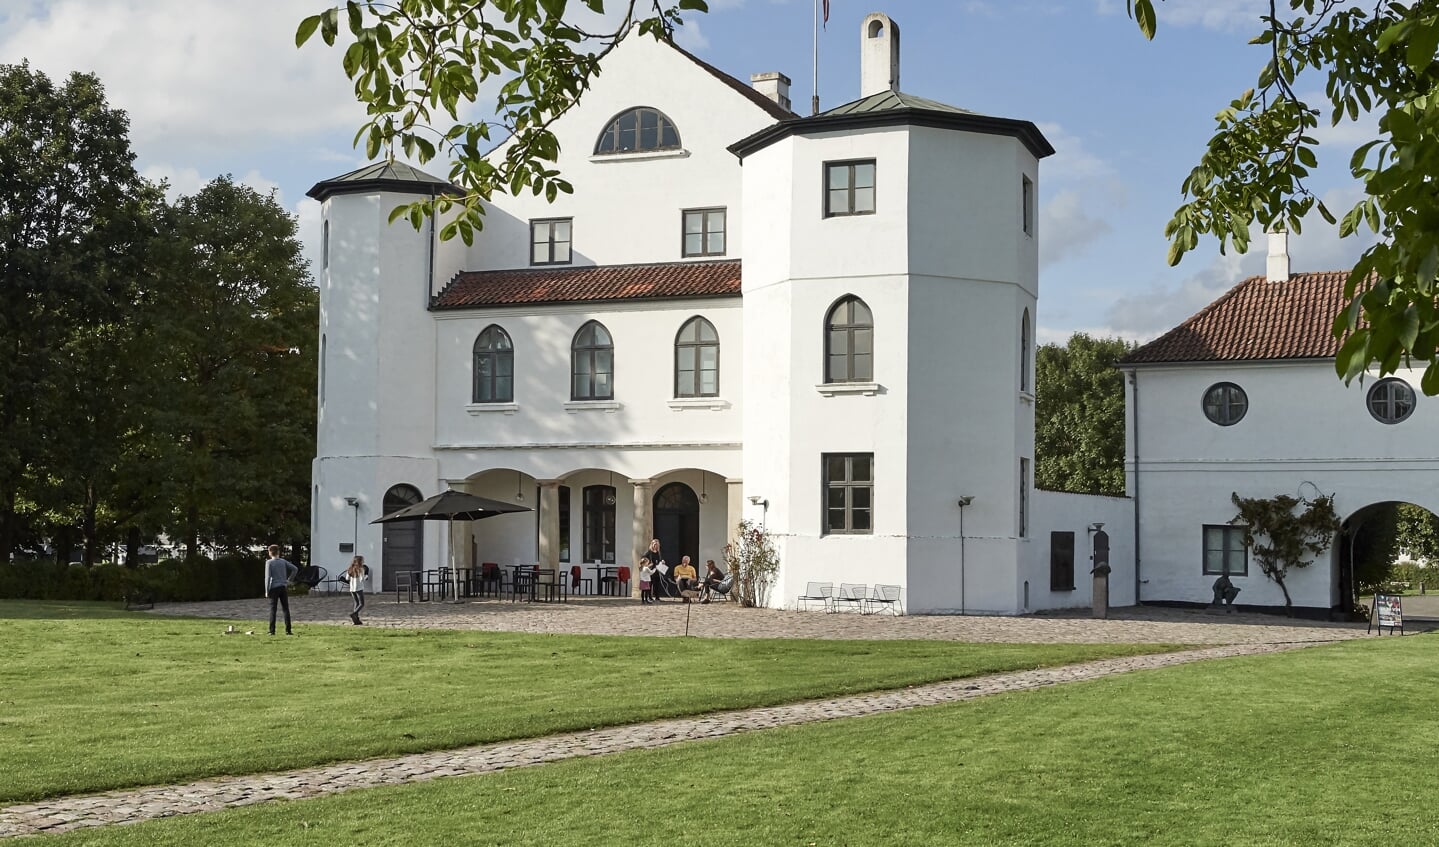 Kunstmuseet på Brundlund Slot blev i sin tid oprettet af Aabenraa Kommune, men er siden blevet lagt ind under Museum Sønderjylland, der er en sammenslutning af flere museer i grænselandet. Foto: